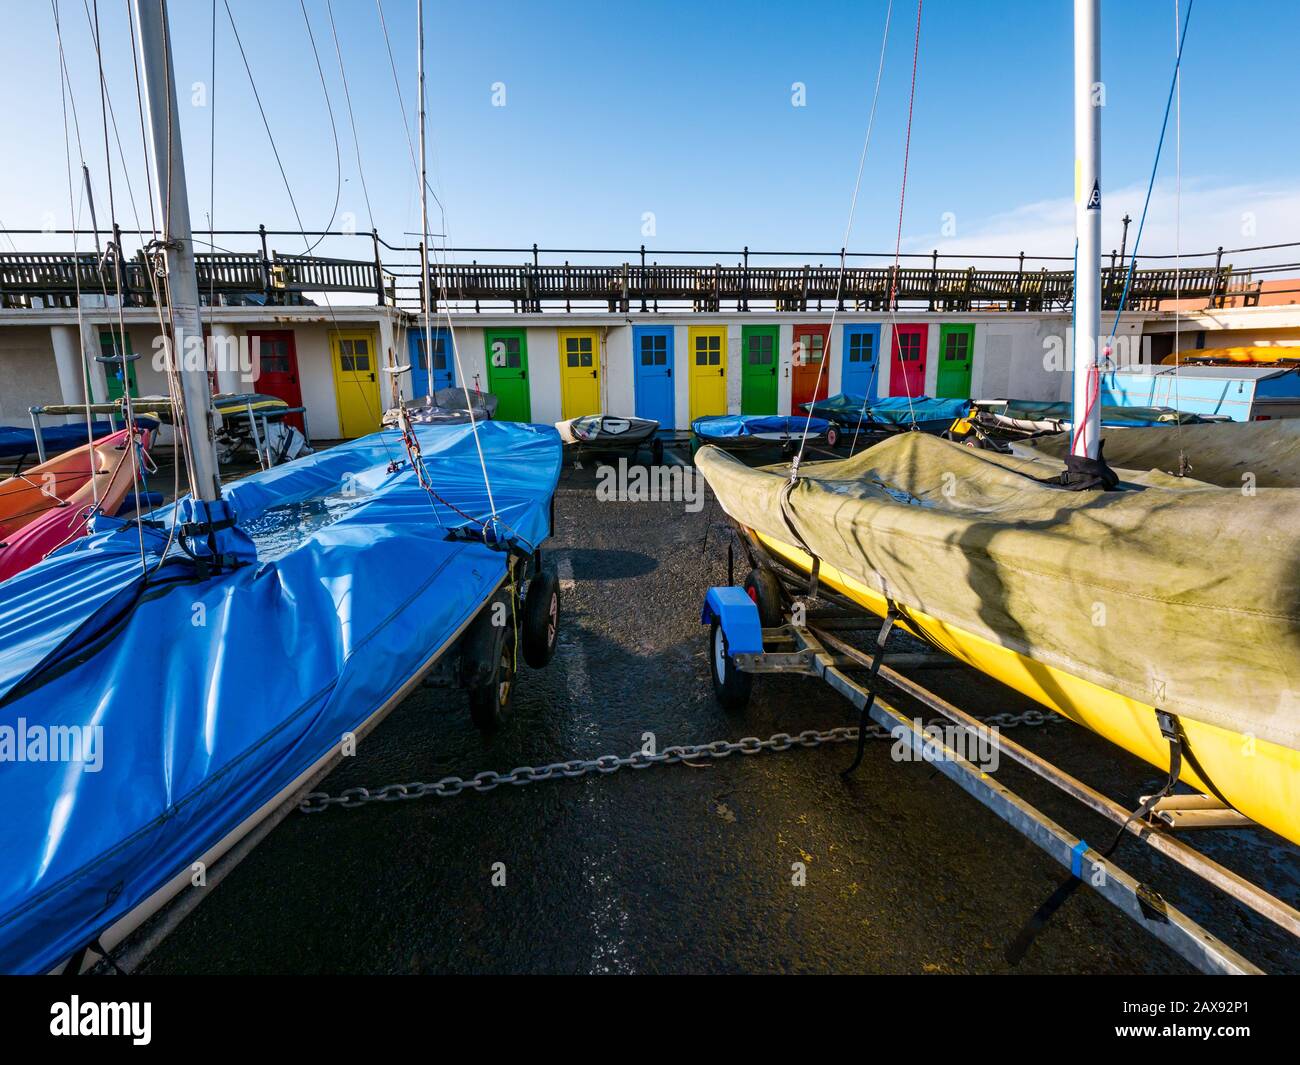 Porte colorate numerate nel cortile di deposito delle barche in inverno (ex cubicoli cambianti), porto di North Berwick, East Lothian, Scozia, Regno Unito Foto Stock